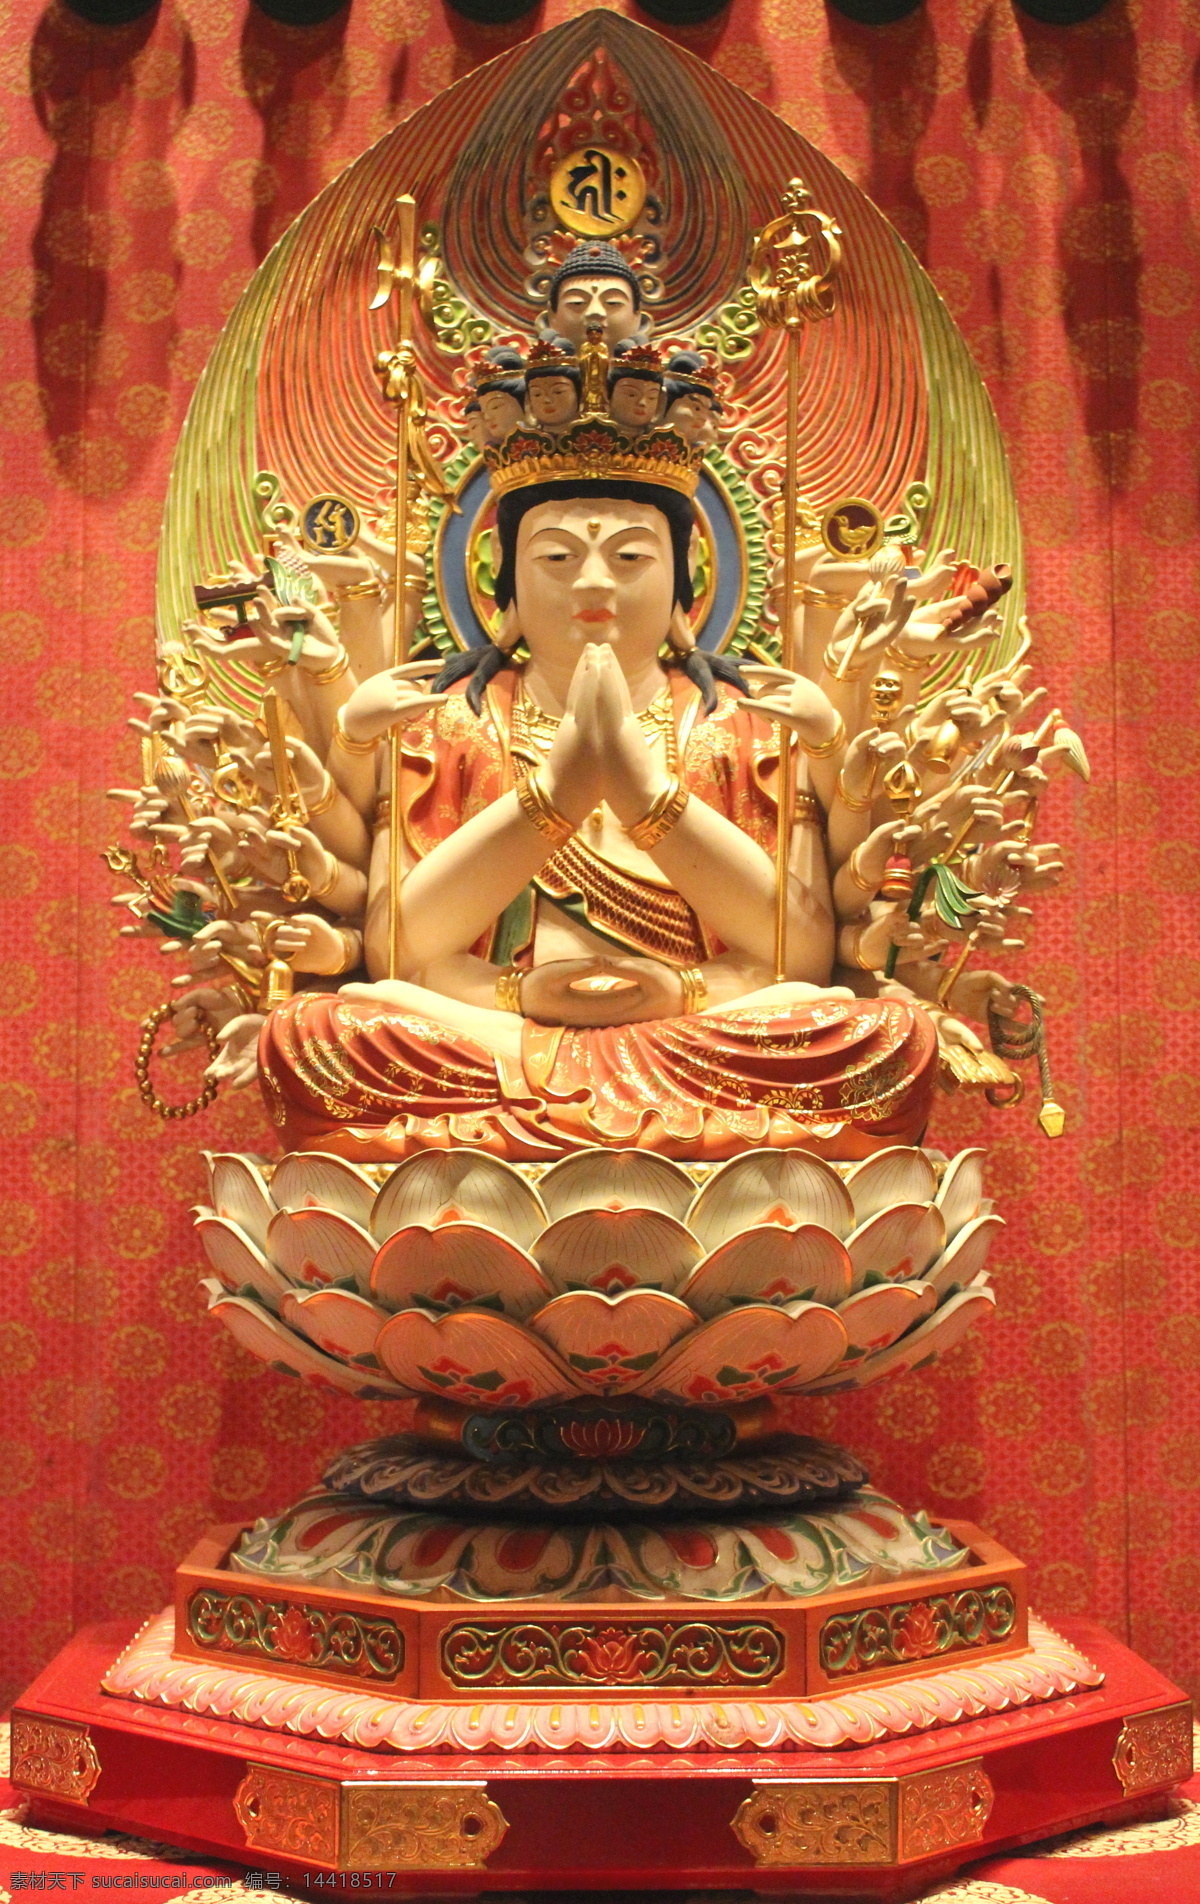 观世音菩萨 佛教 日本佛教 真言宗 密教 东密 真言密教 佛像 宗教信仰 文化艺术